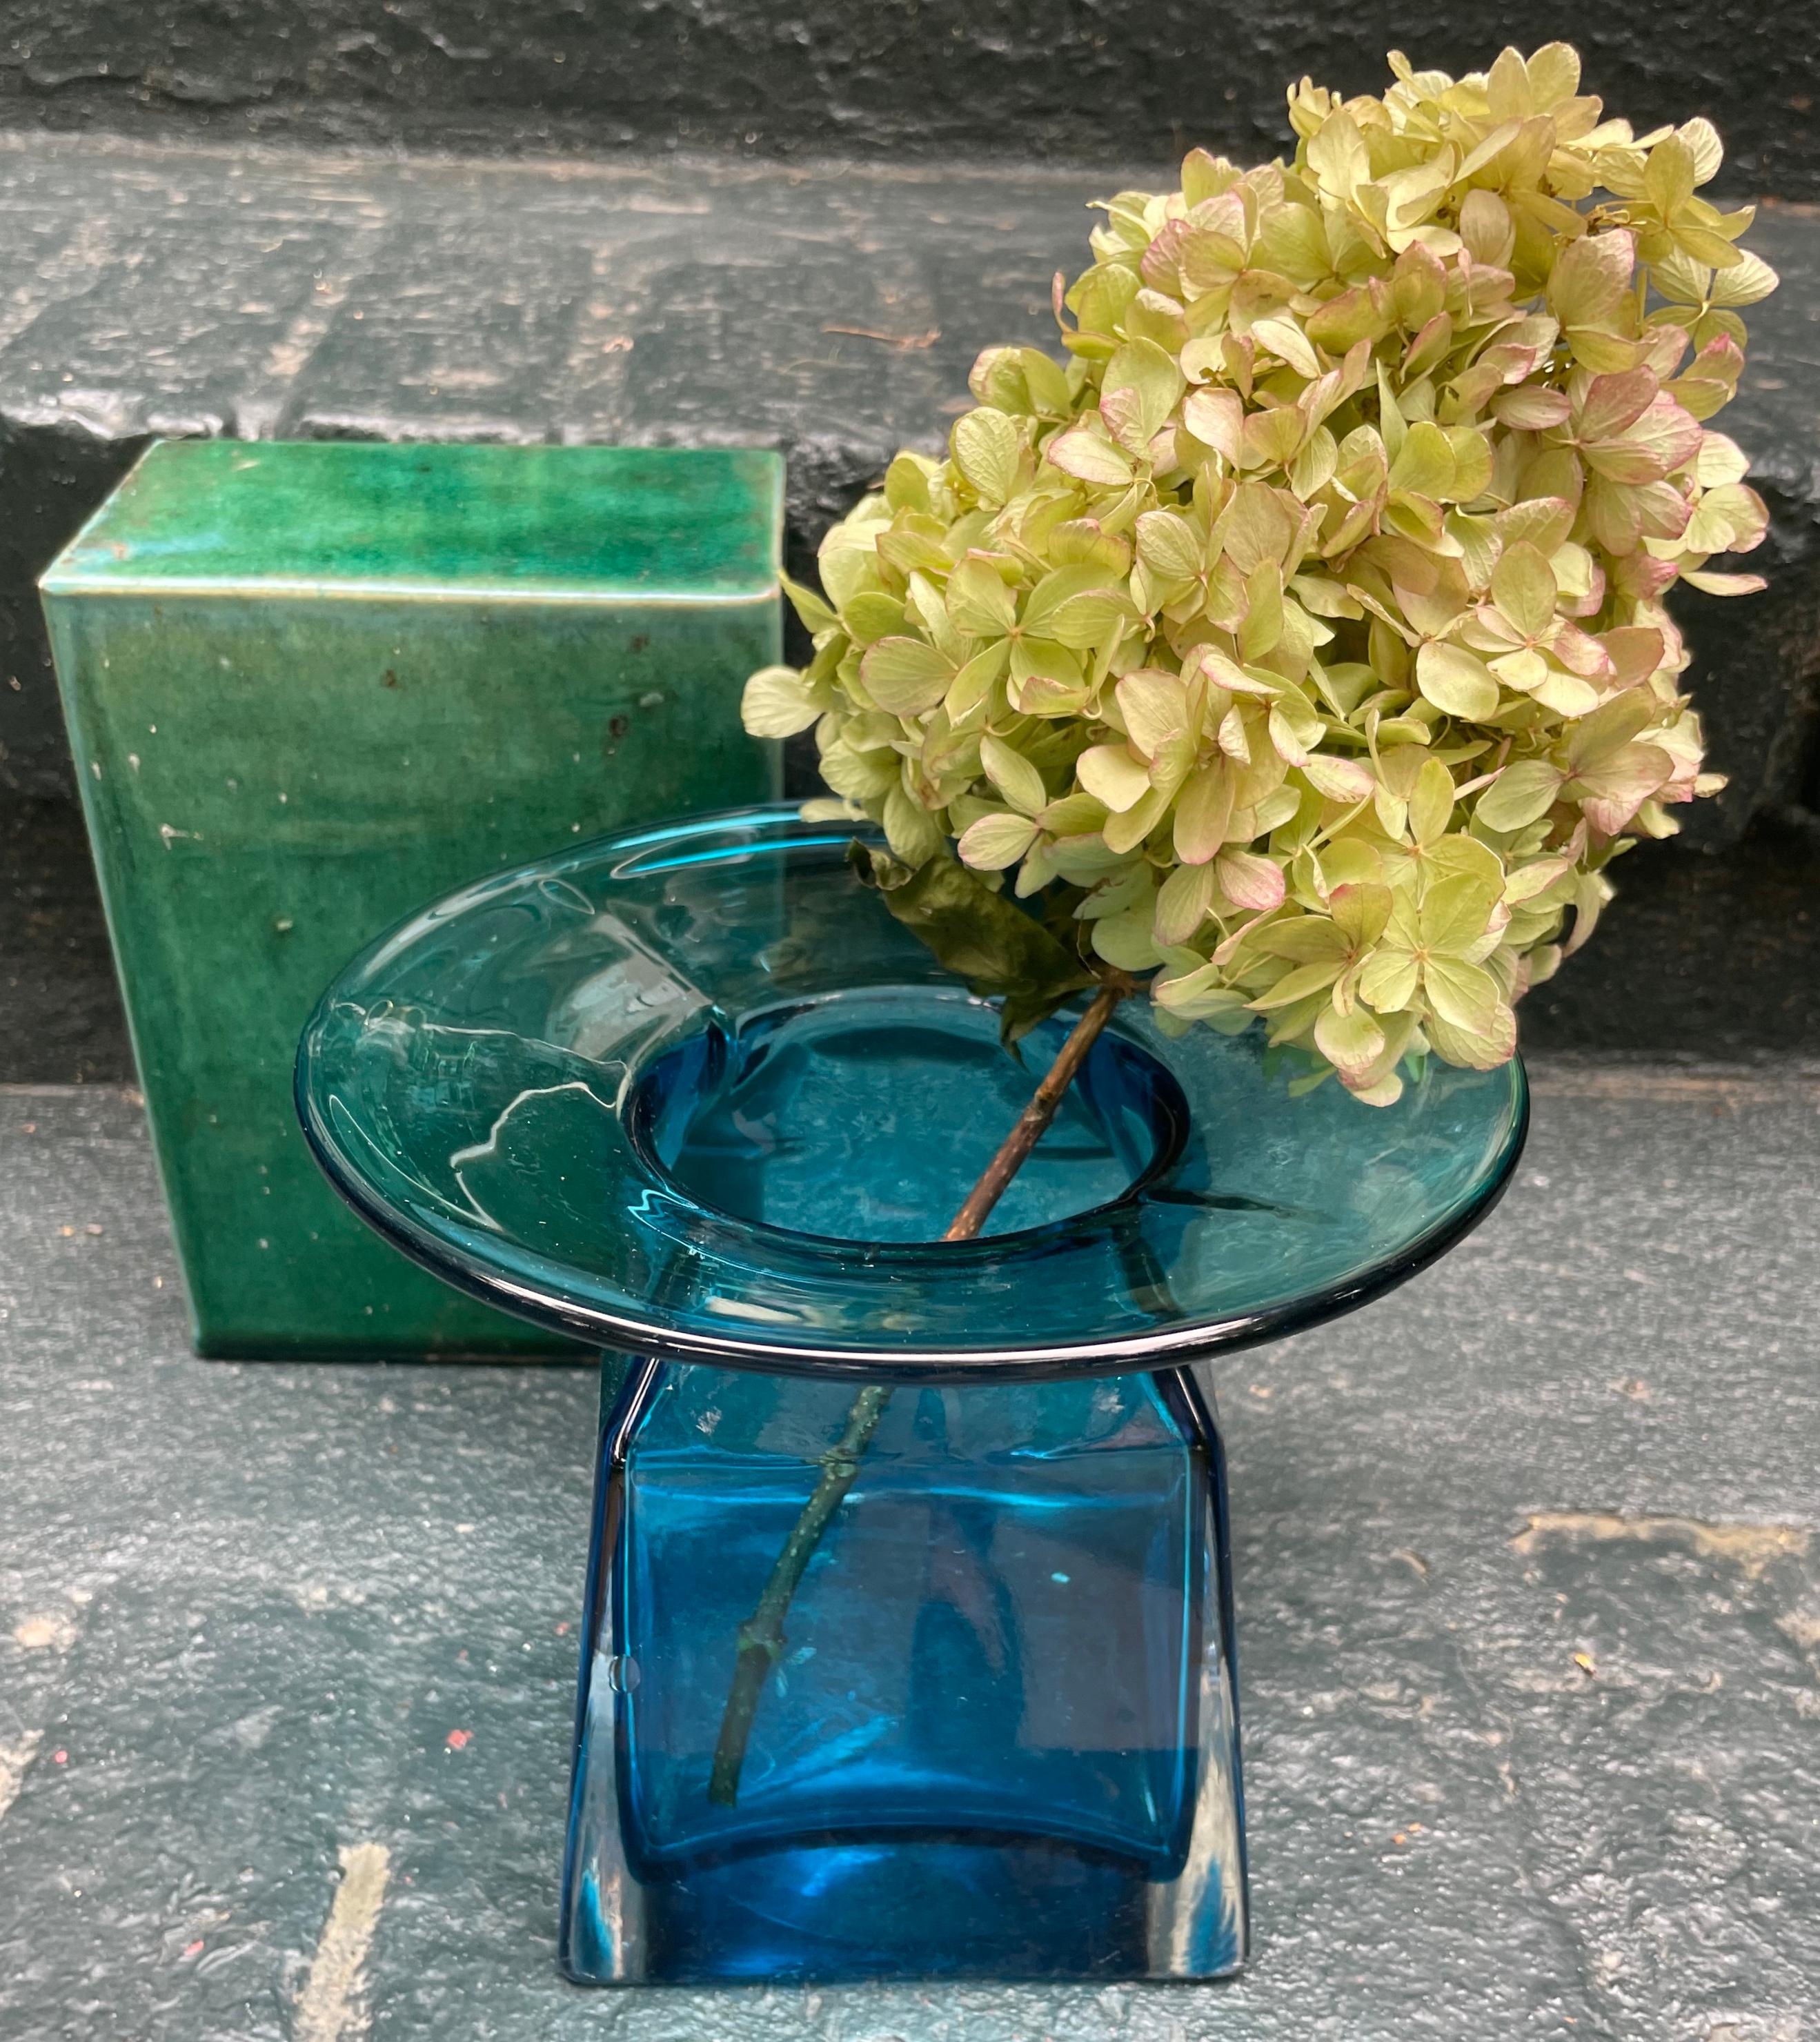 Amerikanische Vase aus aquamarinblauem Glas im Jugendstil. Mittelgroße, mundgeblasene Vase mit breitem, ausgestelltem Hals und kantiger Vase in tiefem Aquamarinblau; mit einigen Blaseneinschlüssen. In sehr gutem Zustand mit leichten Gebrauchsspuren